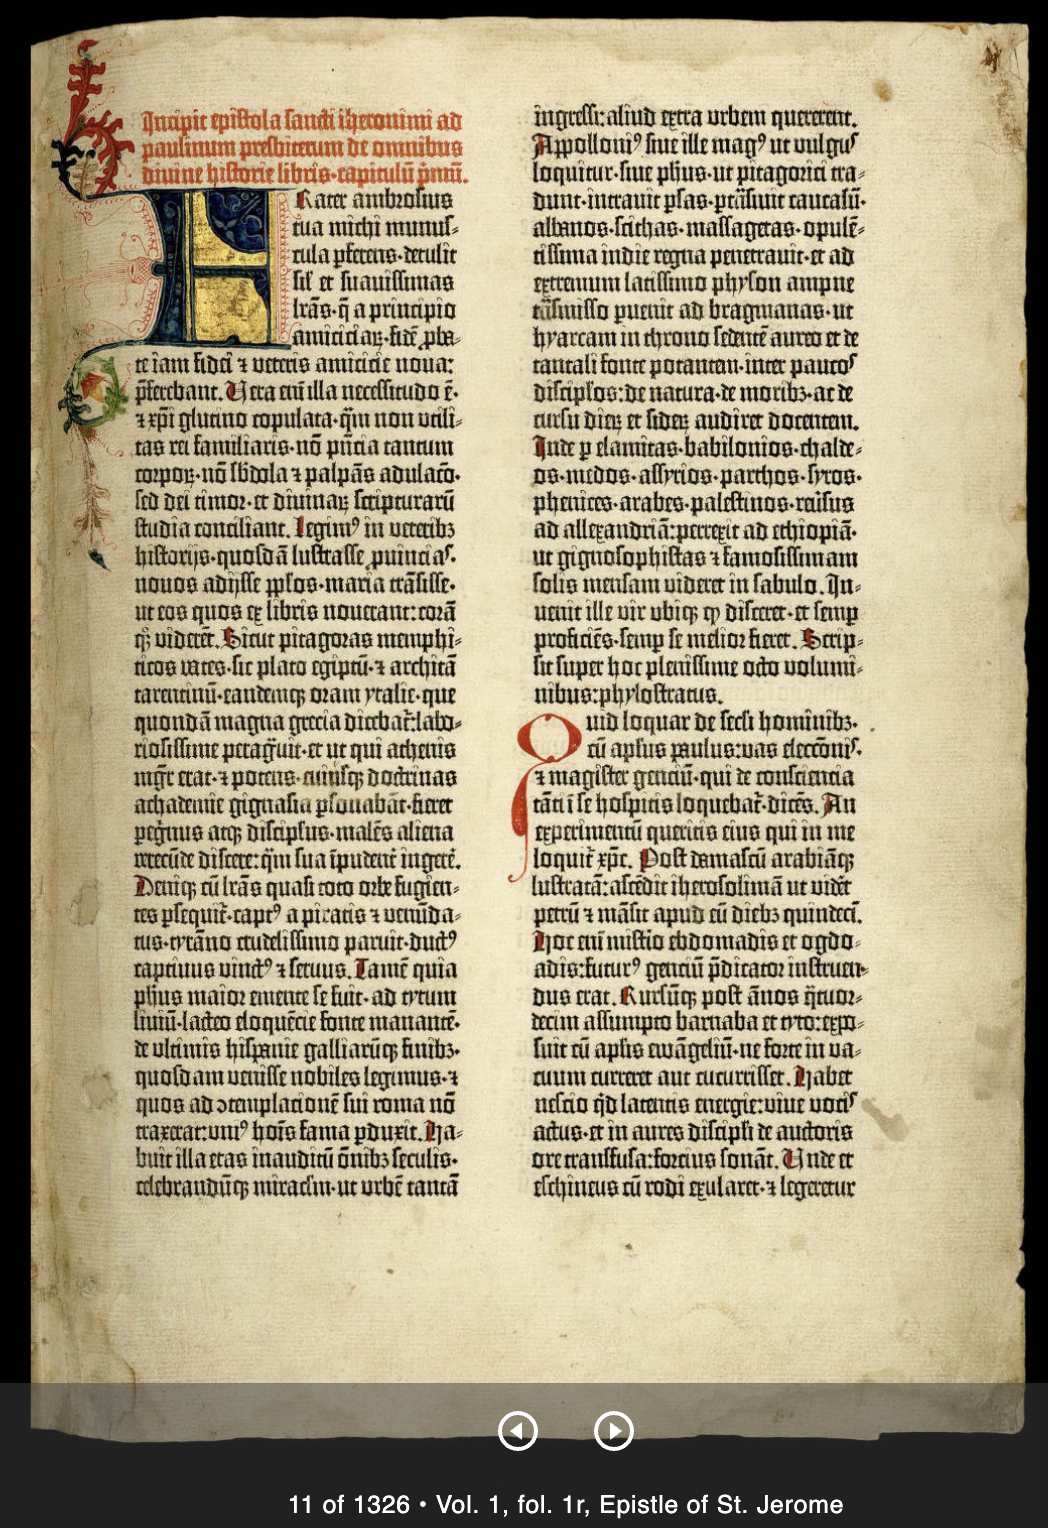 The Gutenberg Bible, 1454